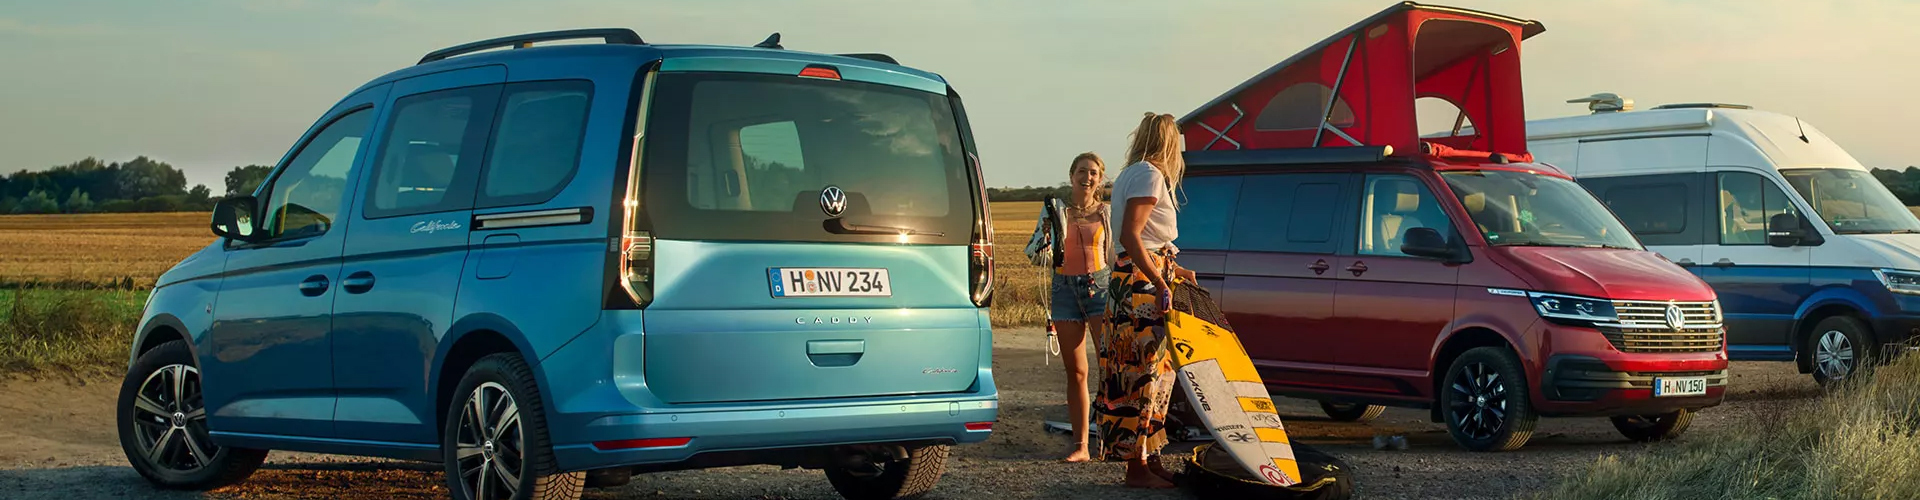 Volkswagen Camping - VanSite Jahrespass